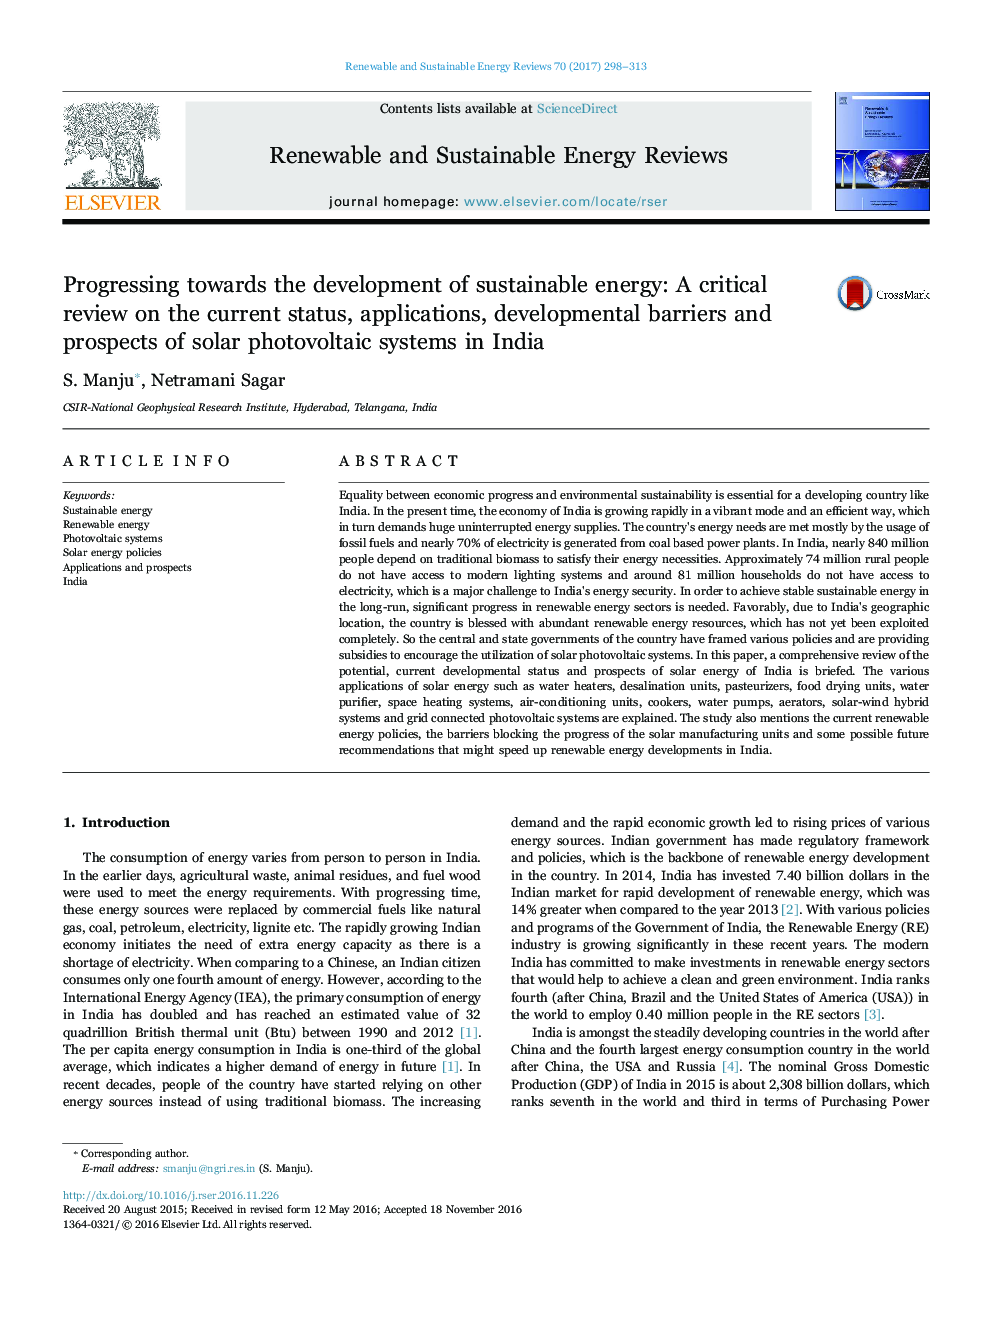 پیشرفت در جهت توسعه انرژی پایدار: بررسی بحرانی وضعیت فعلی، برنامه های کاربردی، موانع توسعه و چشم انداز سیستم های فتوولتائیک خورشیدی در هند 